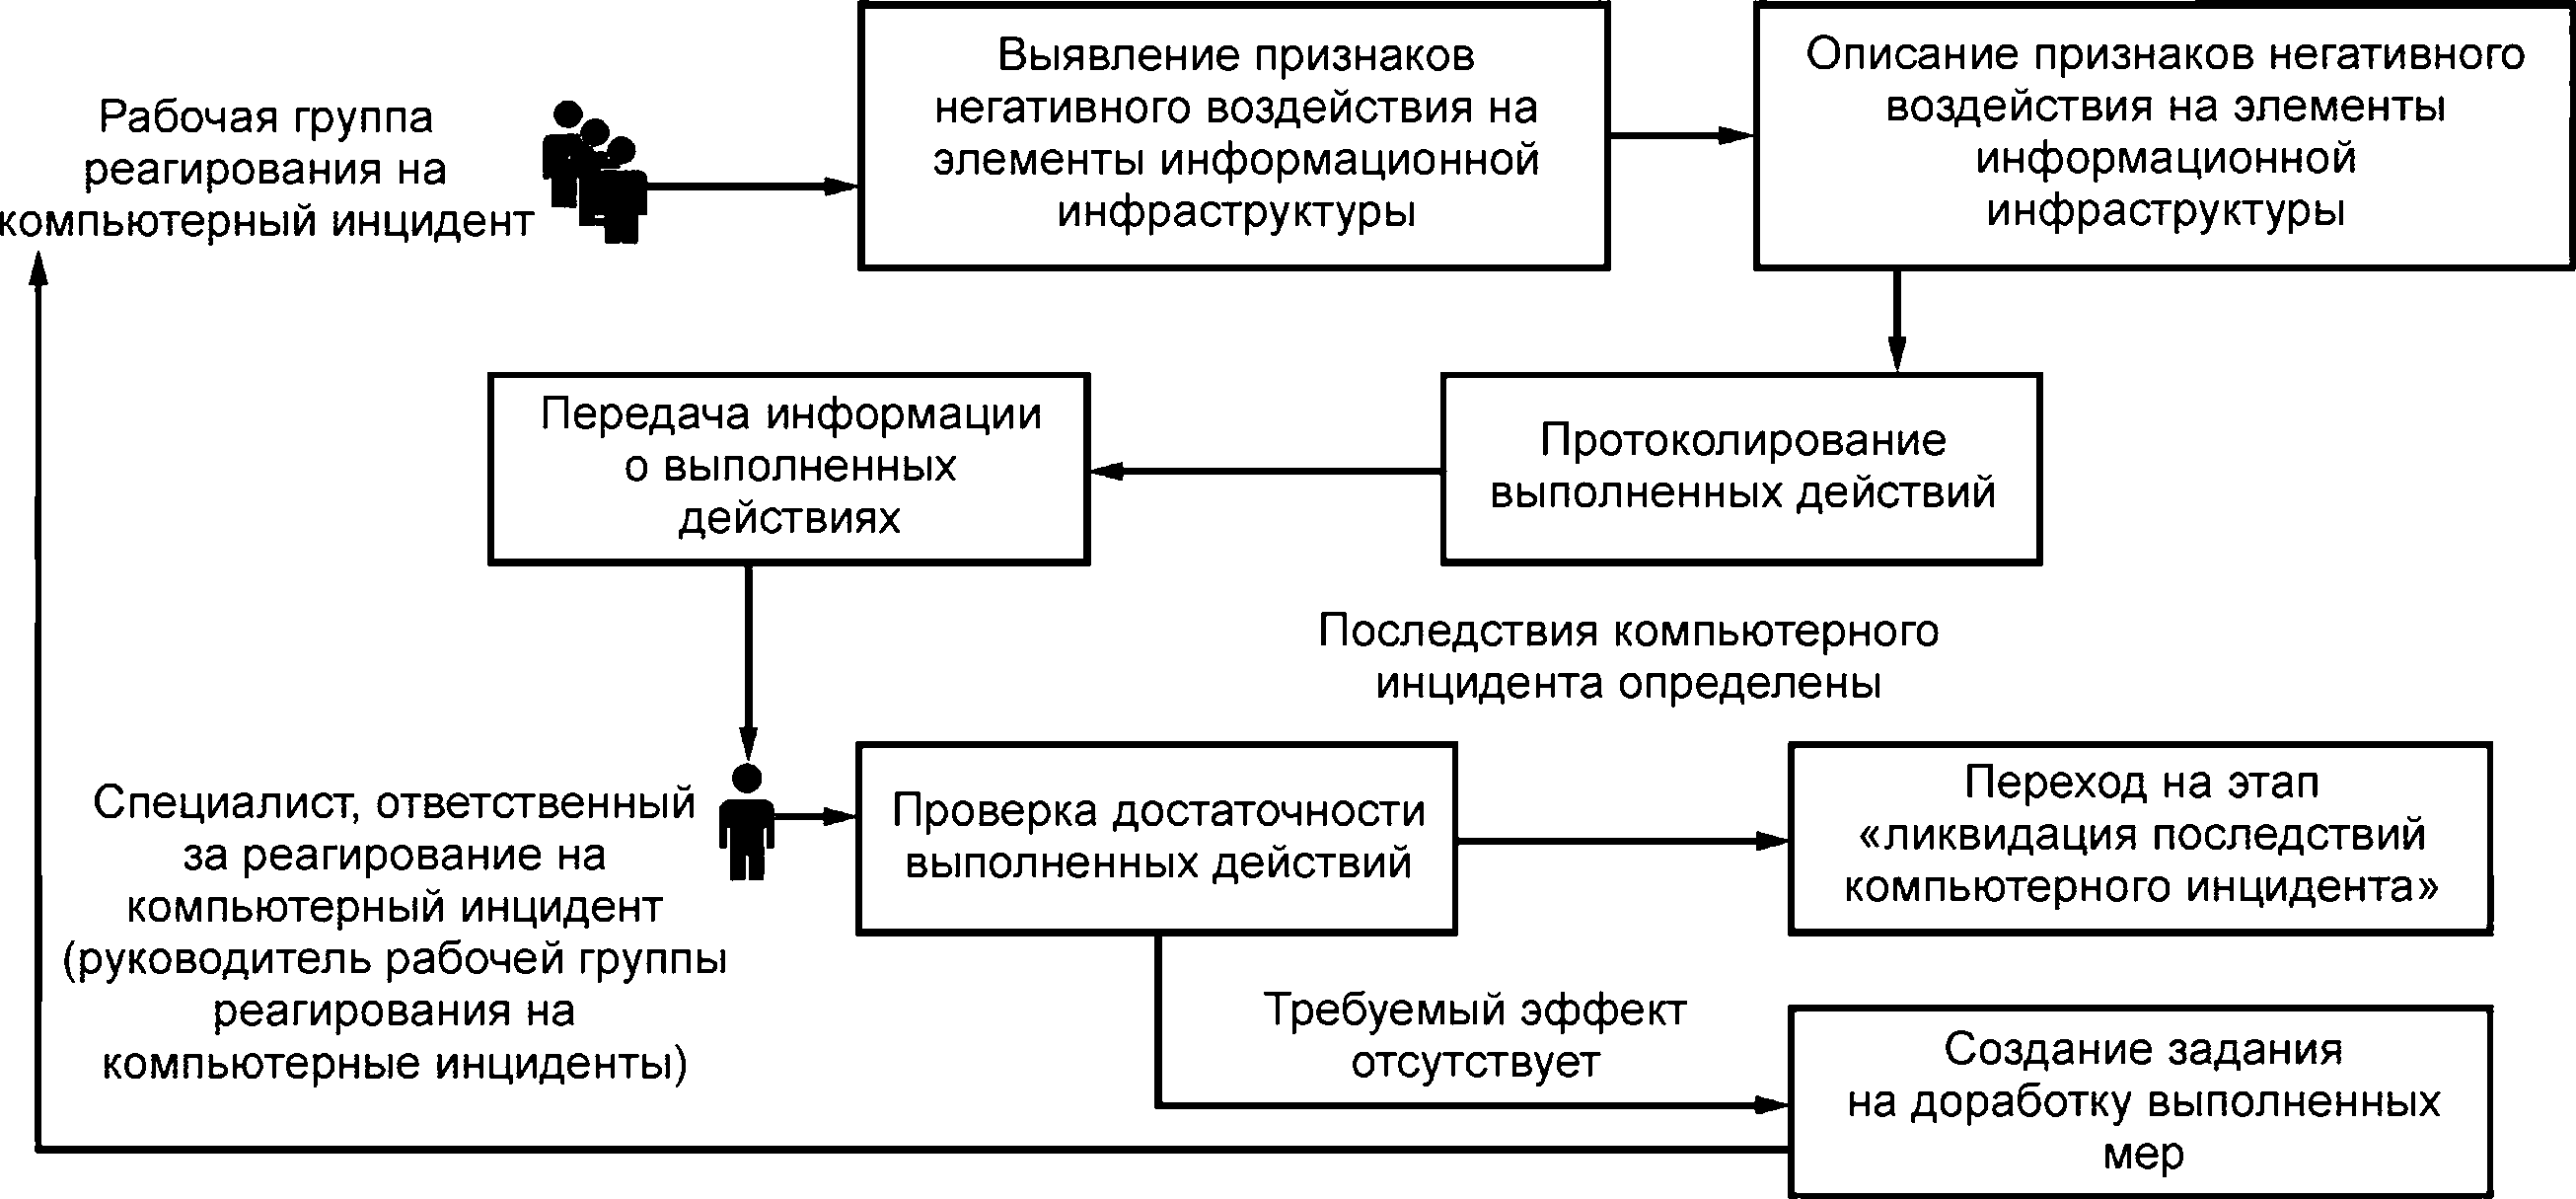 - Рисунок 3 - Схема организационного процесса этапа «выявление последствий компьютерного инцидента»